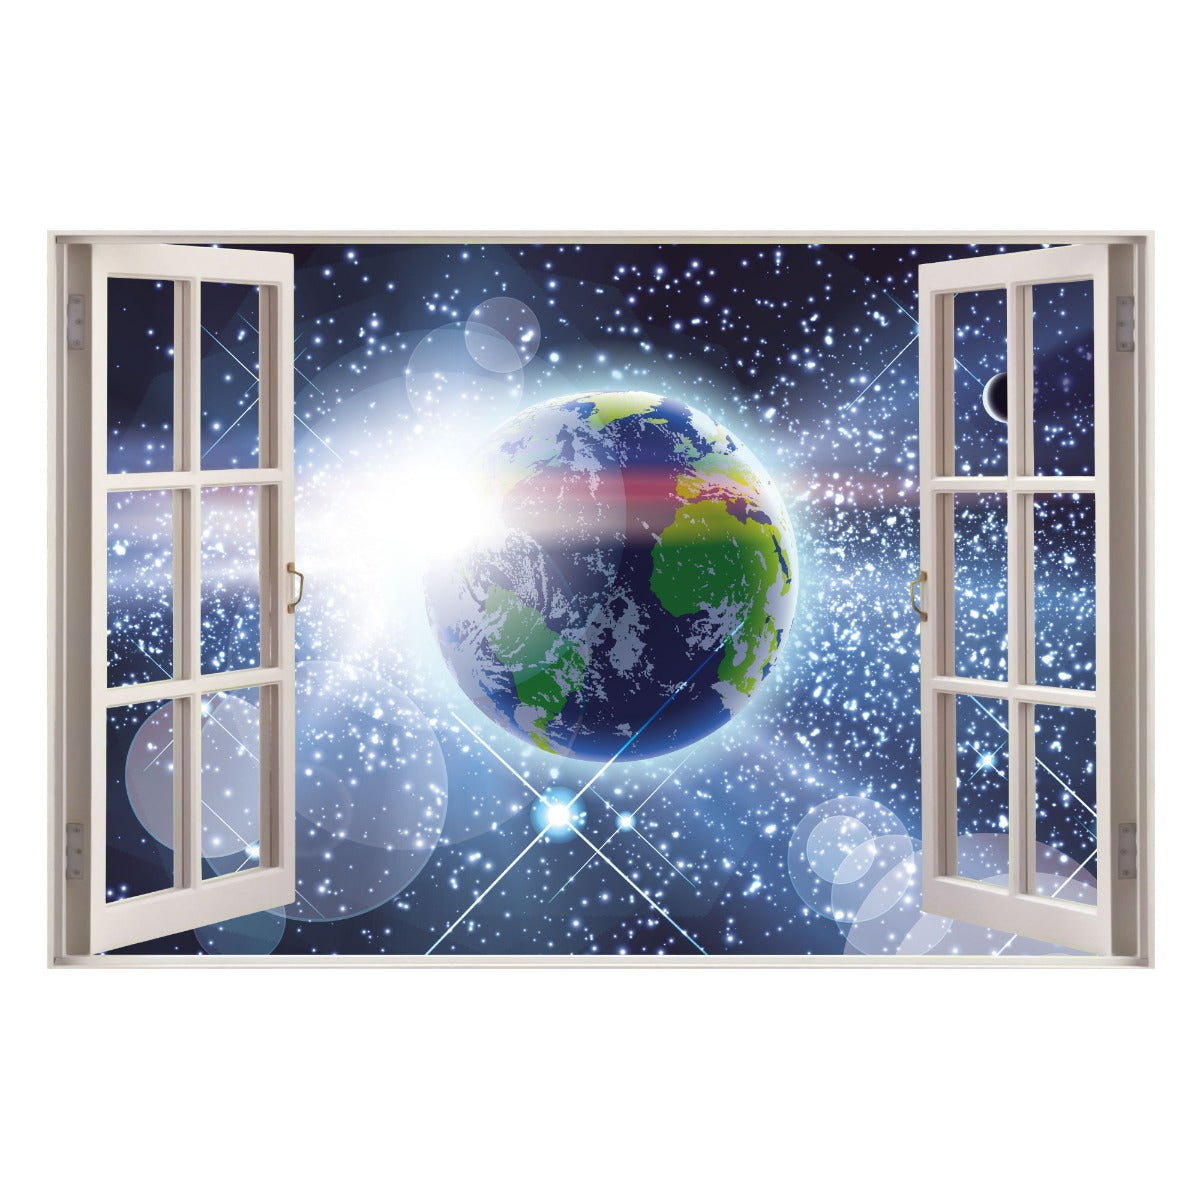 Space Wall Sticker - Earth in Space Window